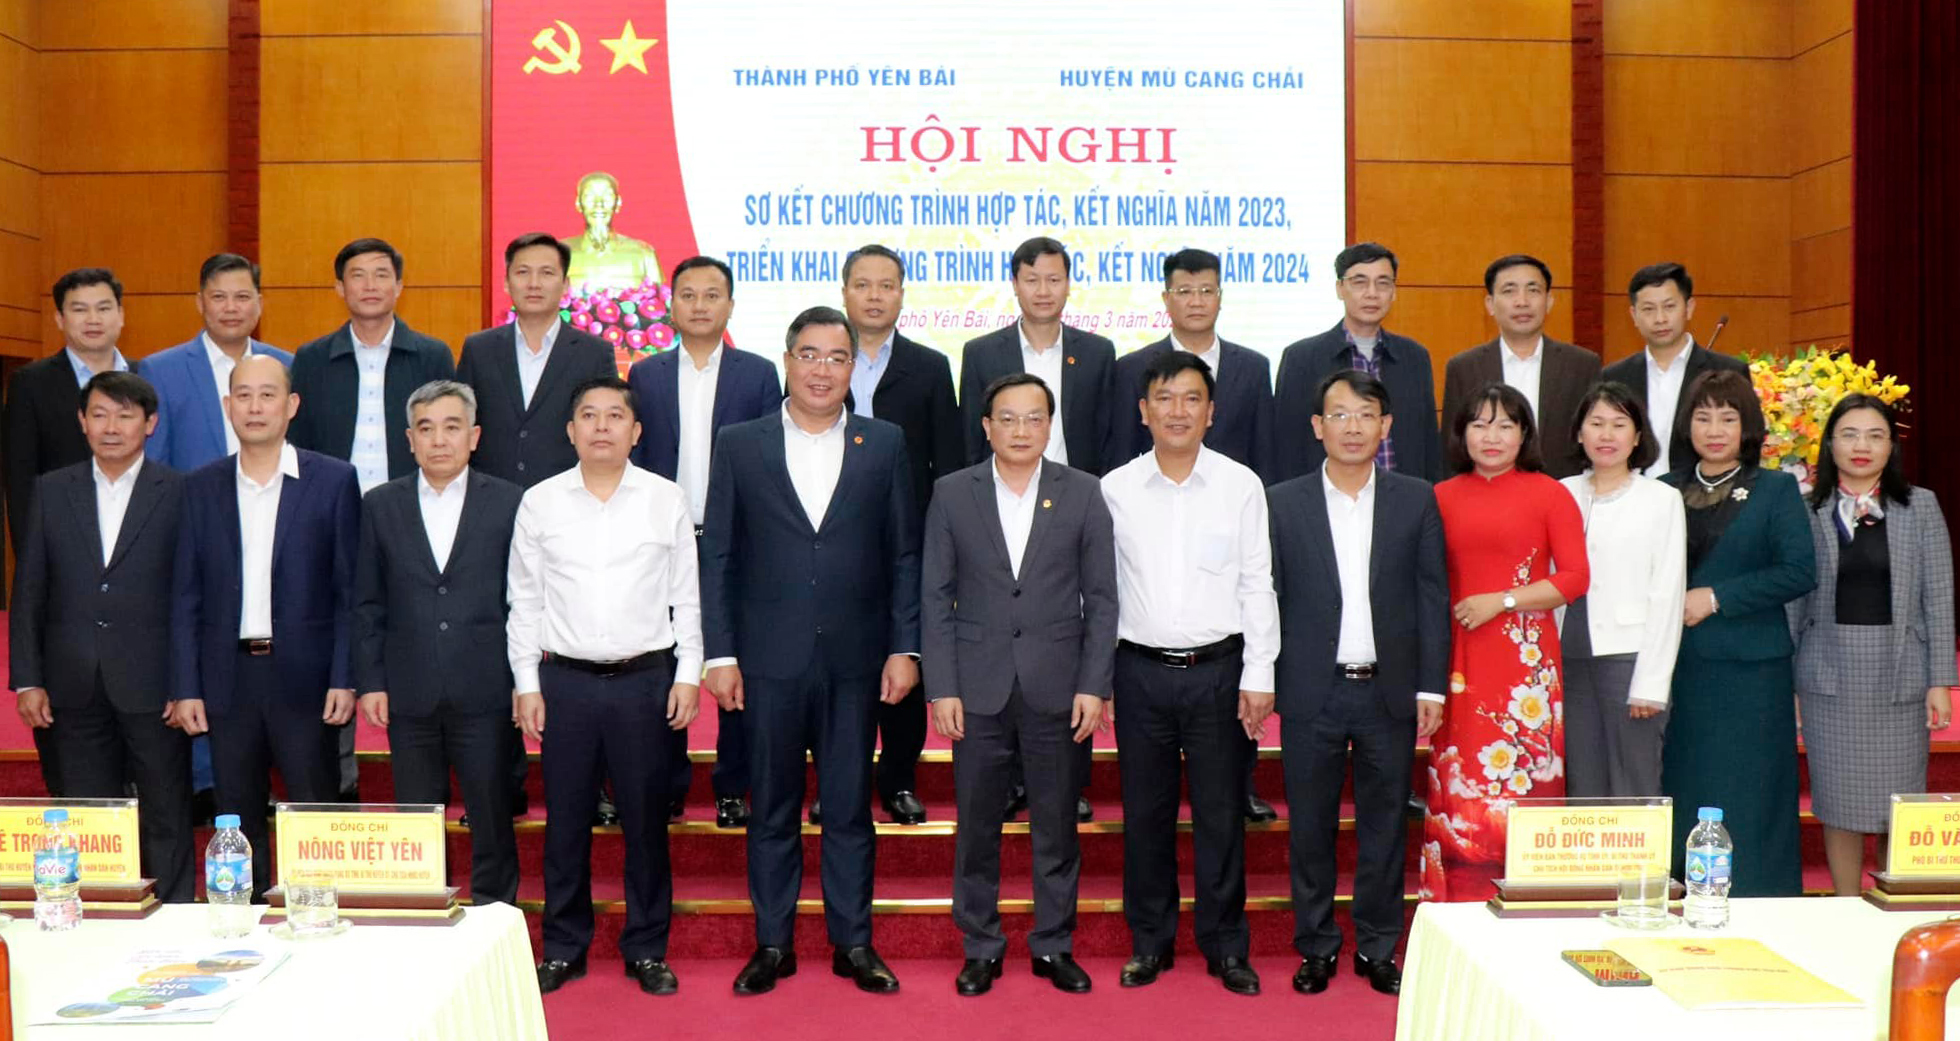 Lãnh đạo thành phố Yên Bái và huyện Mù Cang Chải chụp ảnh lưu niệm tại Hội nghị triển khai công tác hợp tác, kết nghĩa giữa hai địa phương năm 2024